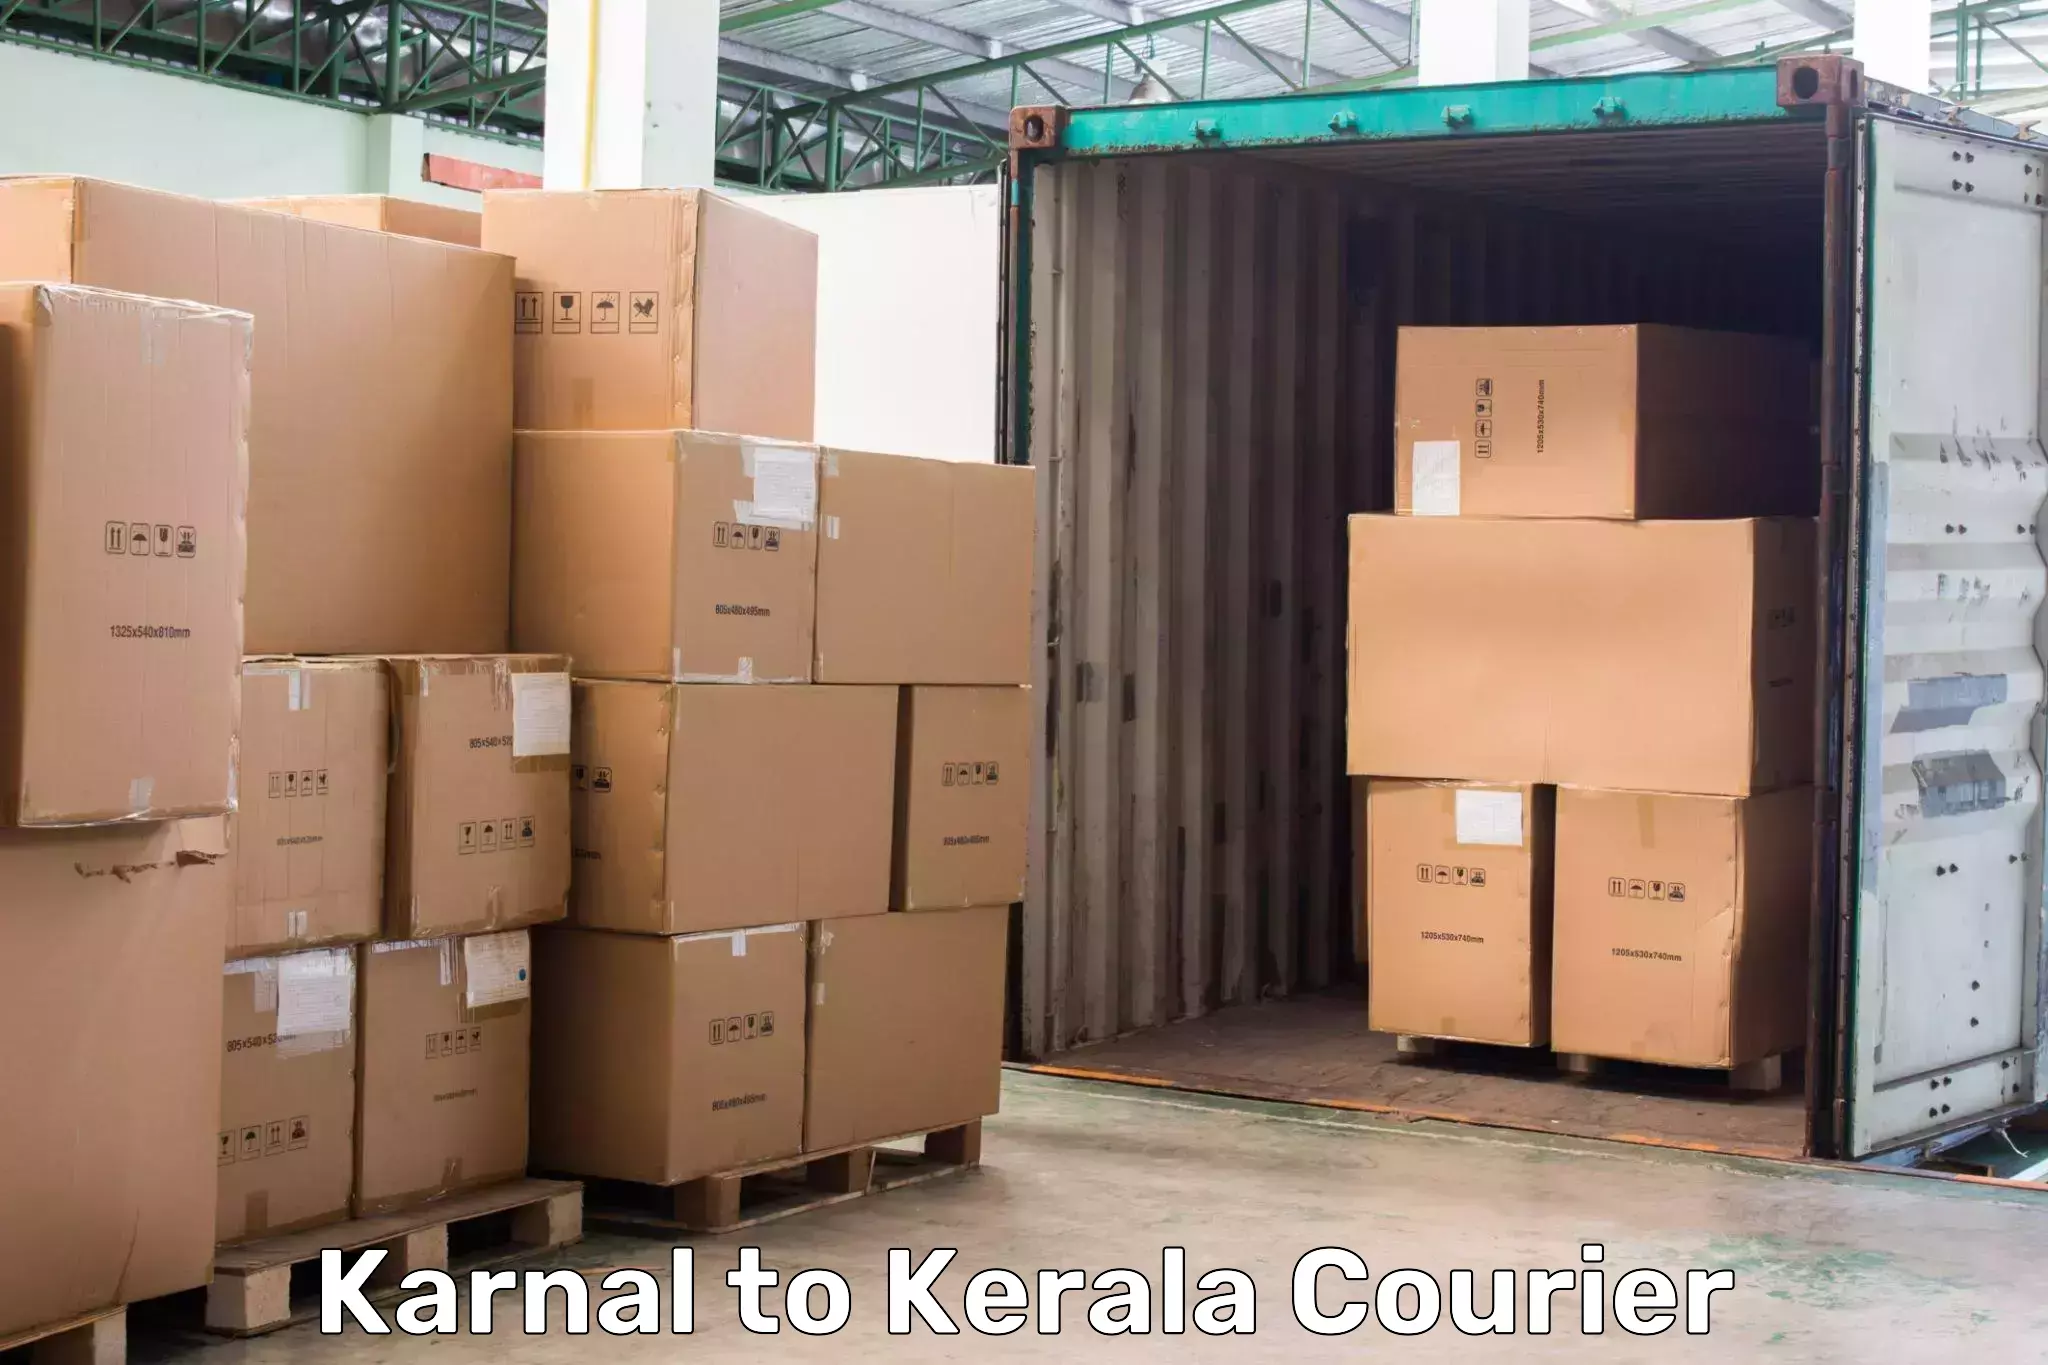 Express package handling Karnal to Nedumkandam